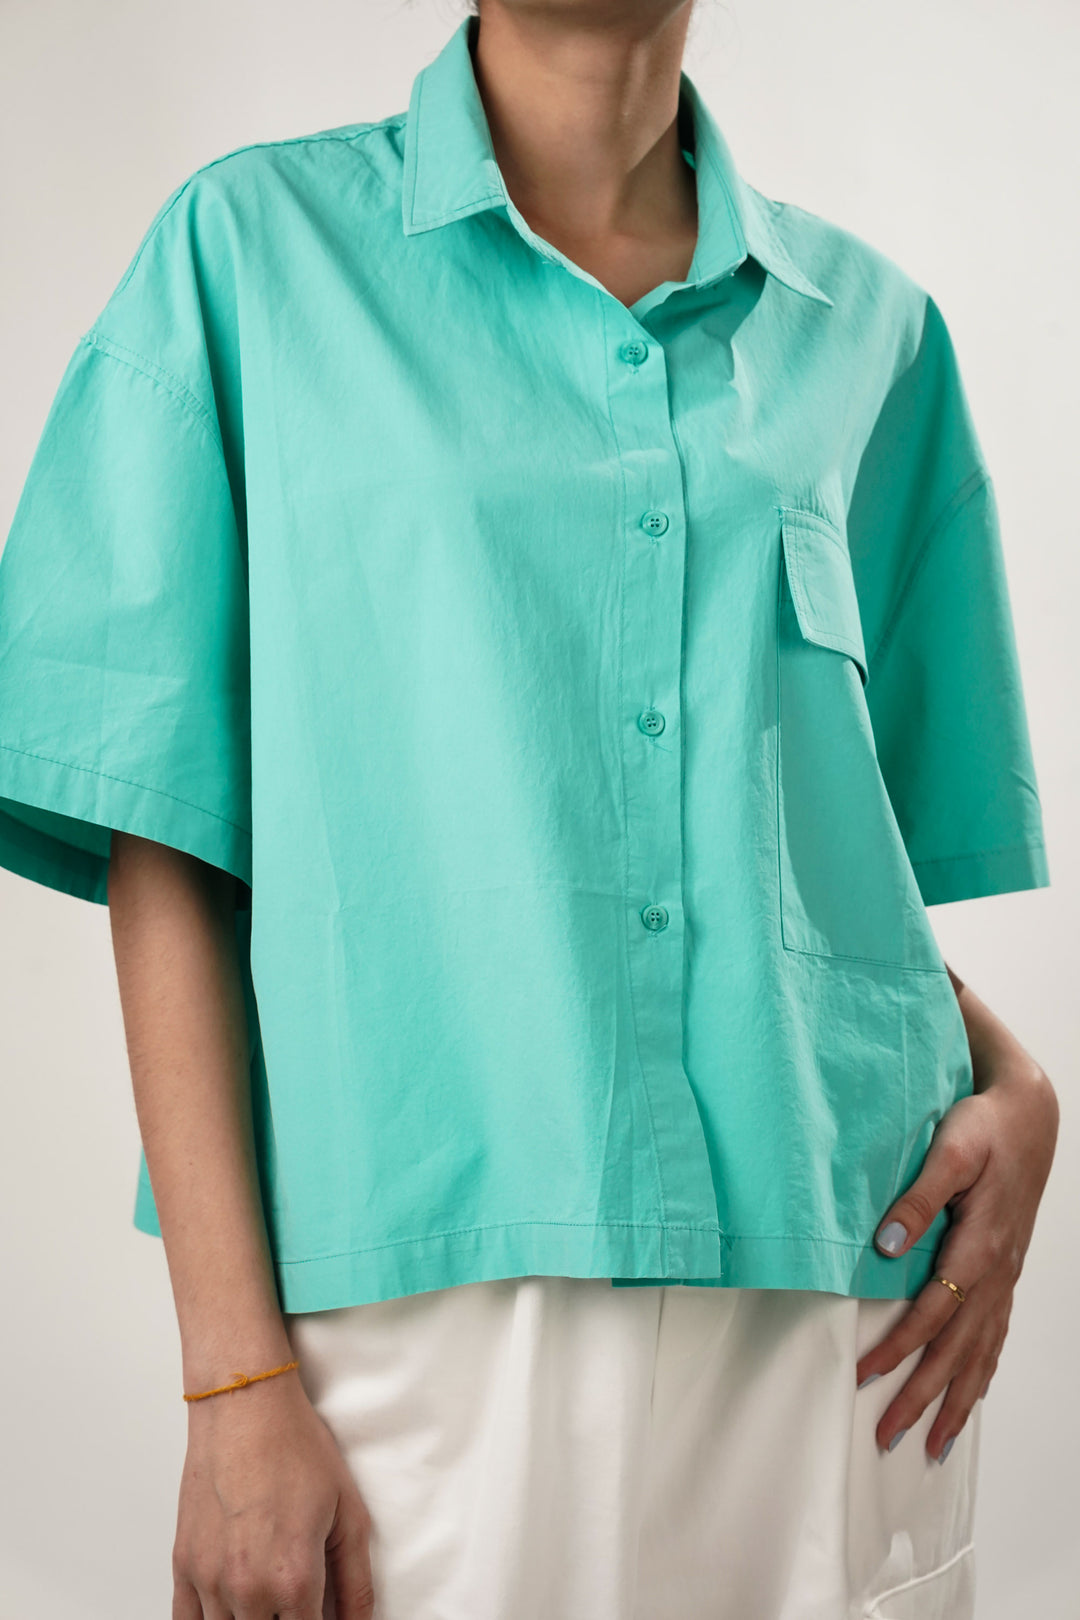 Aqua green oversized shirt for summer wear